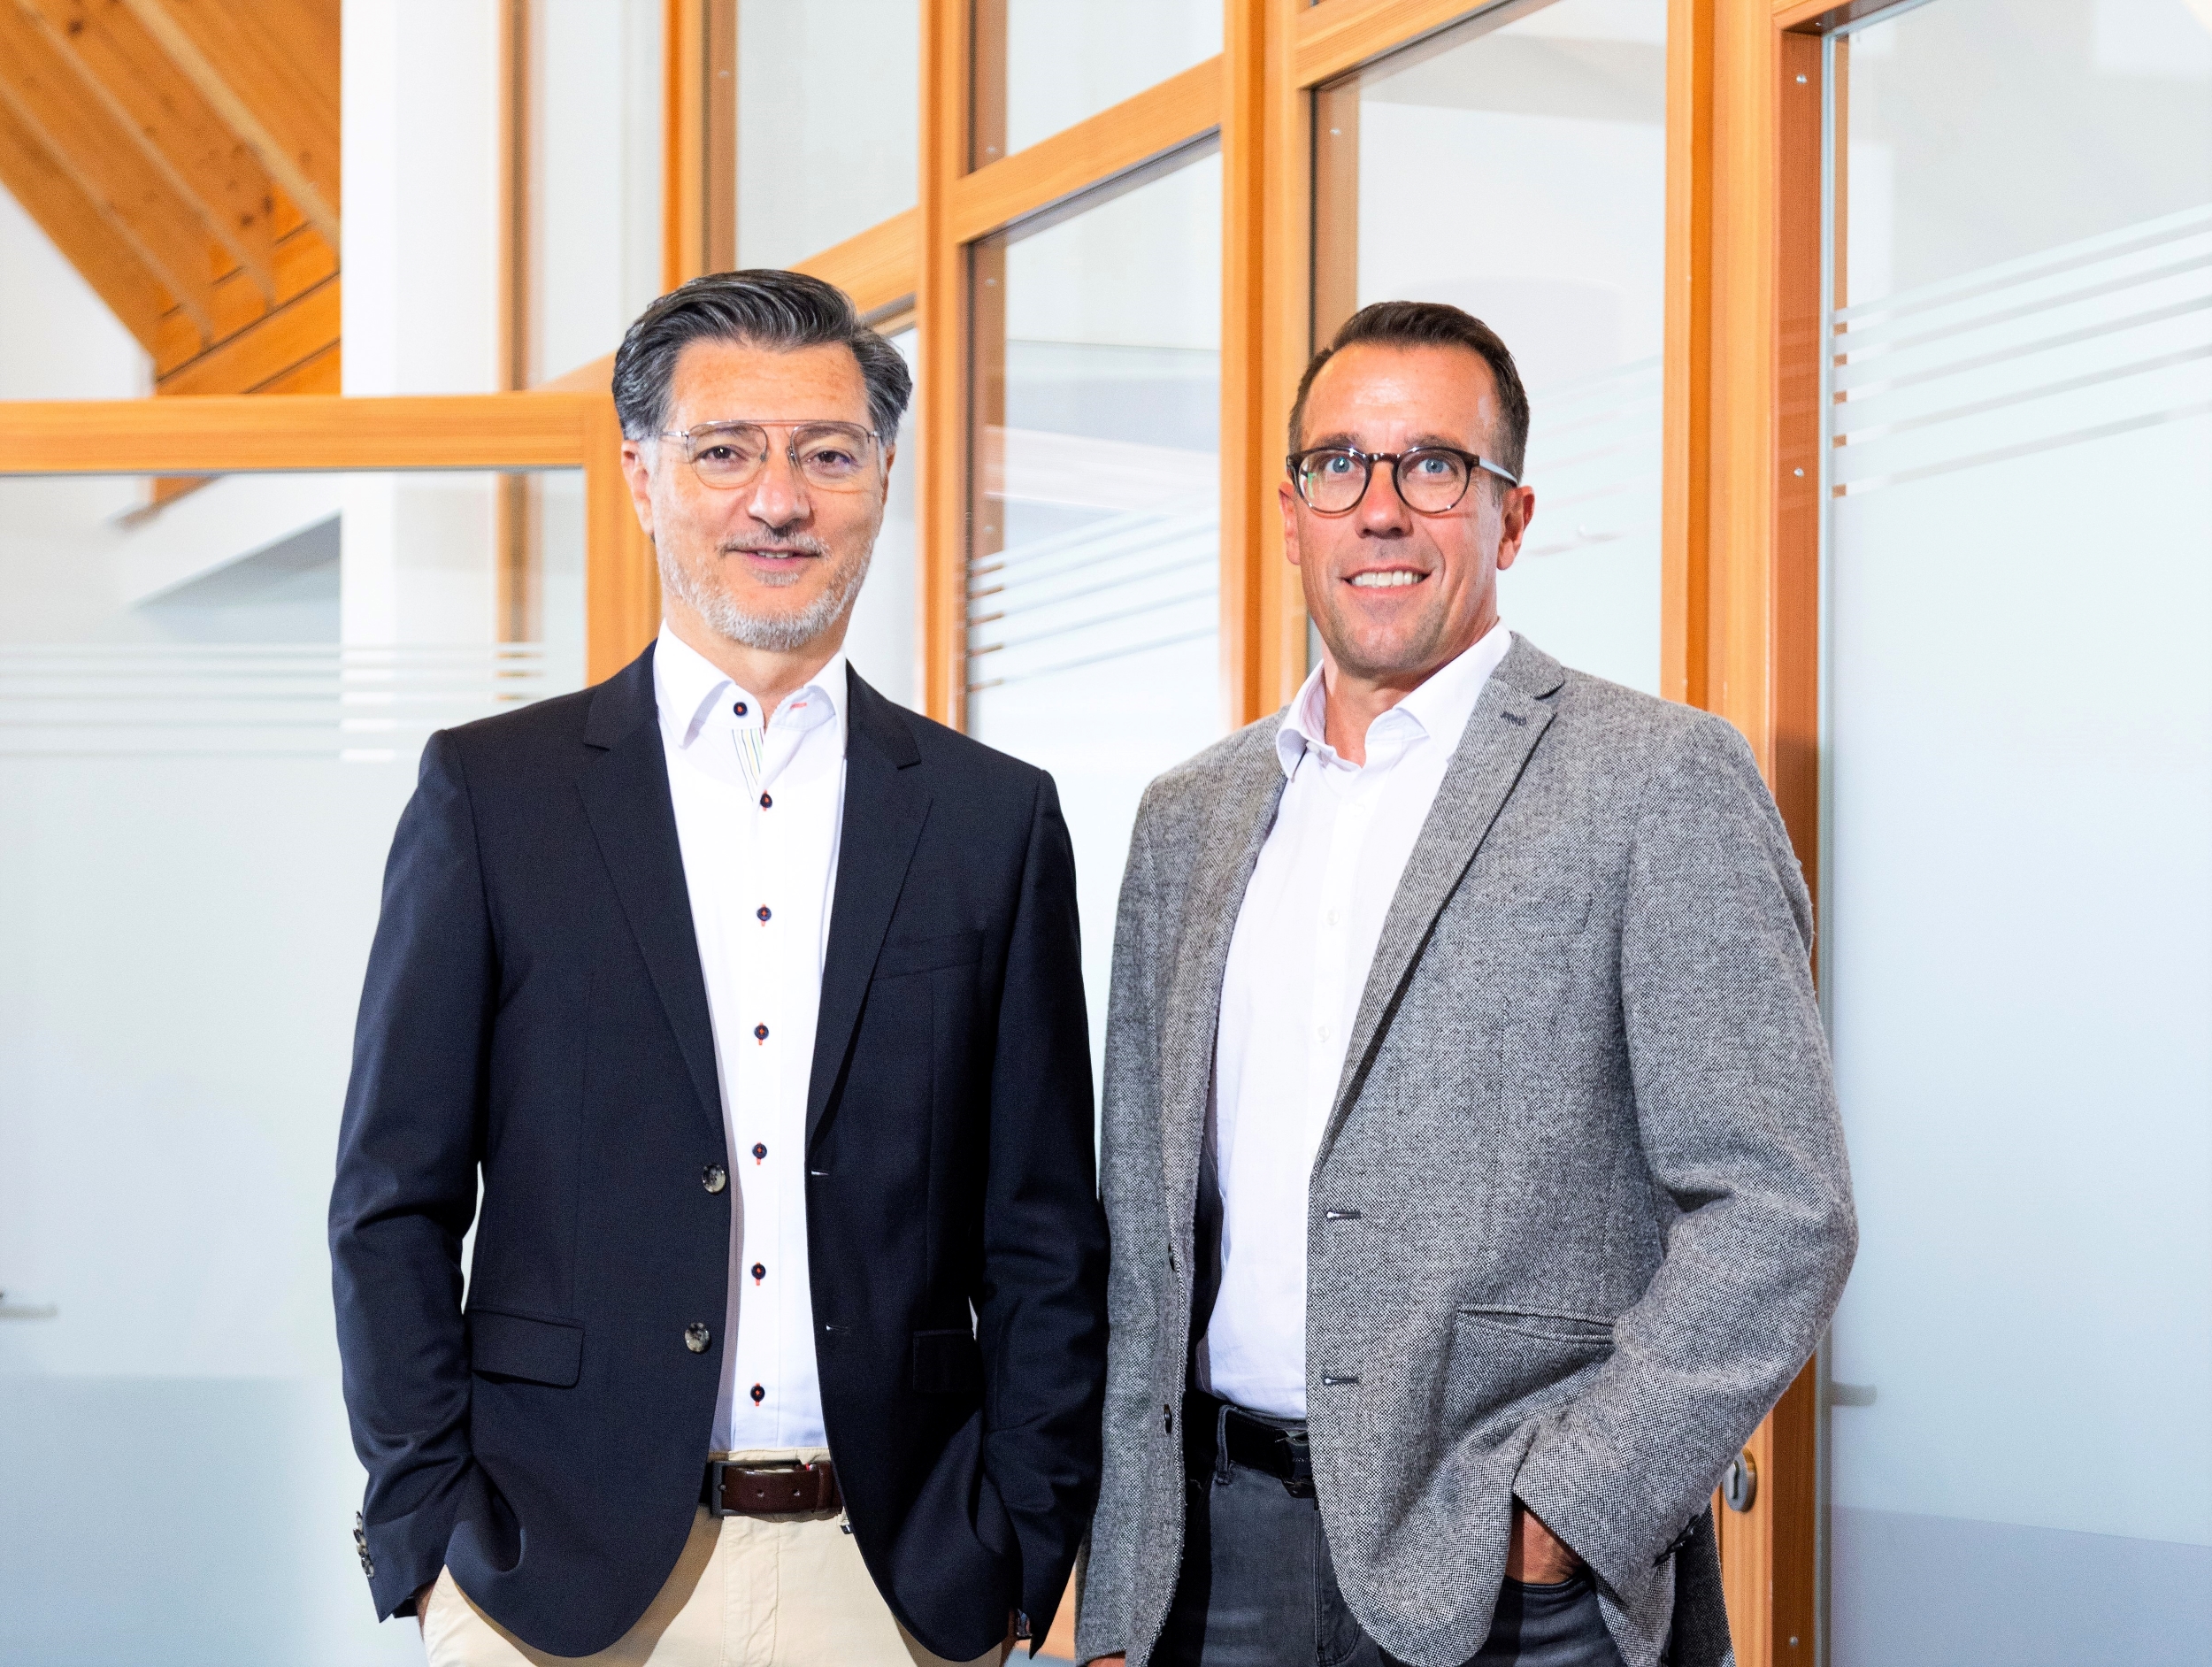 Jumo: Die JUMO-Geschäftsführer Dimitrios Charisiadis (links) und Steffen Hoßfeld (rechts) sehen die Unternehmensgruppe auf einem guten Weg in die Zukunft.